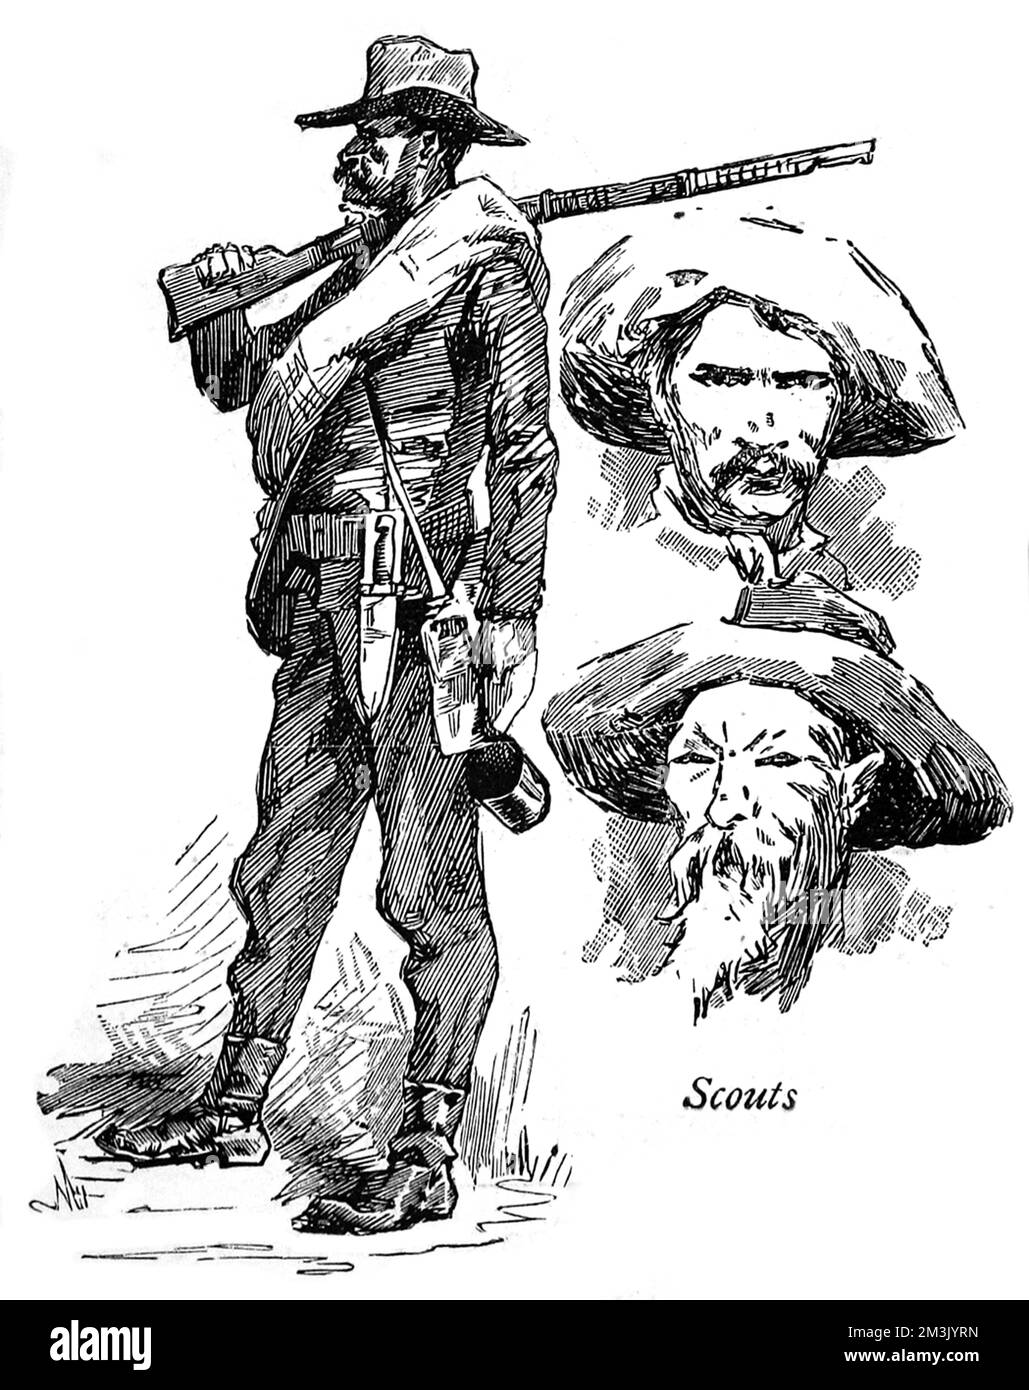 Ein alter US-Soldat und Porträts von lokalen Spähern, die an der Jagd nach Apachen-Indianern während eines der letzten Kriege zwischen den Indianern und der Bundesarmee in Süd-Arizona und Nord-Sonora, Alt-Mexiko, c.1887, teilnahmen. Datum: 1887 Stockfoto